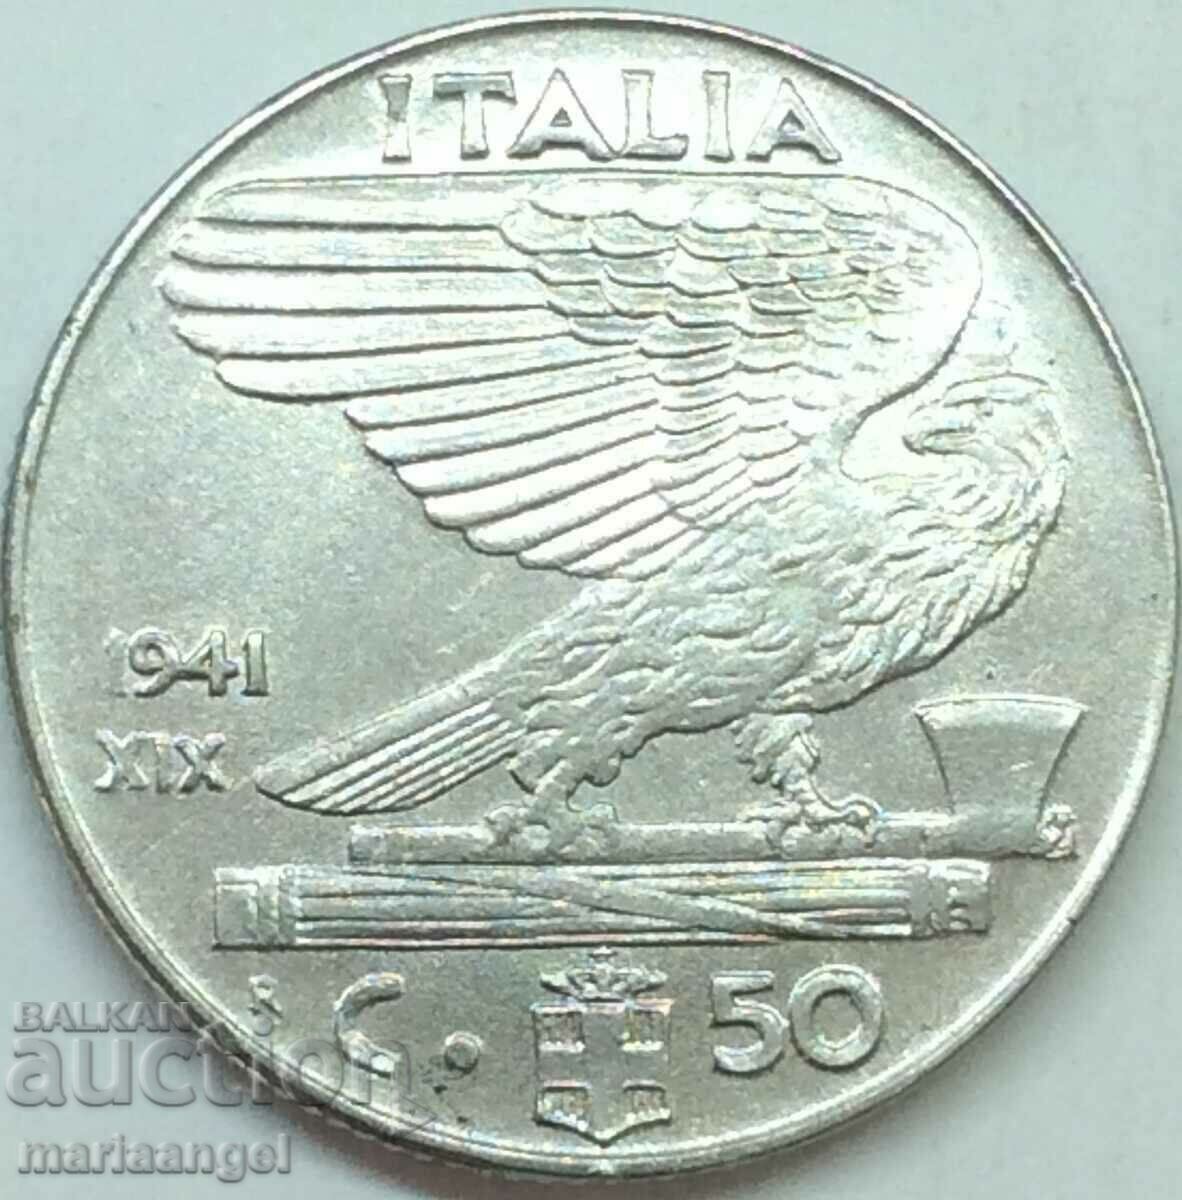 50 centesimi 1941 Italia Vultur - fascism